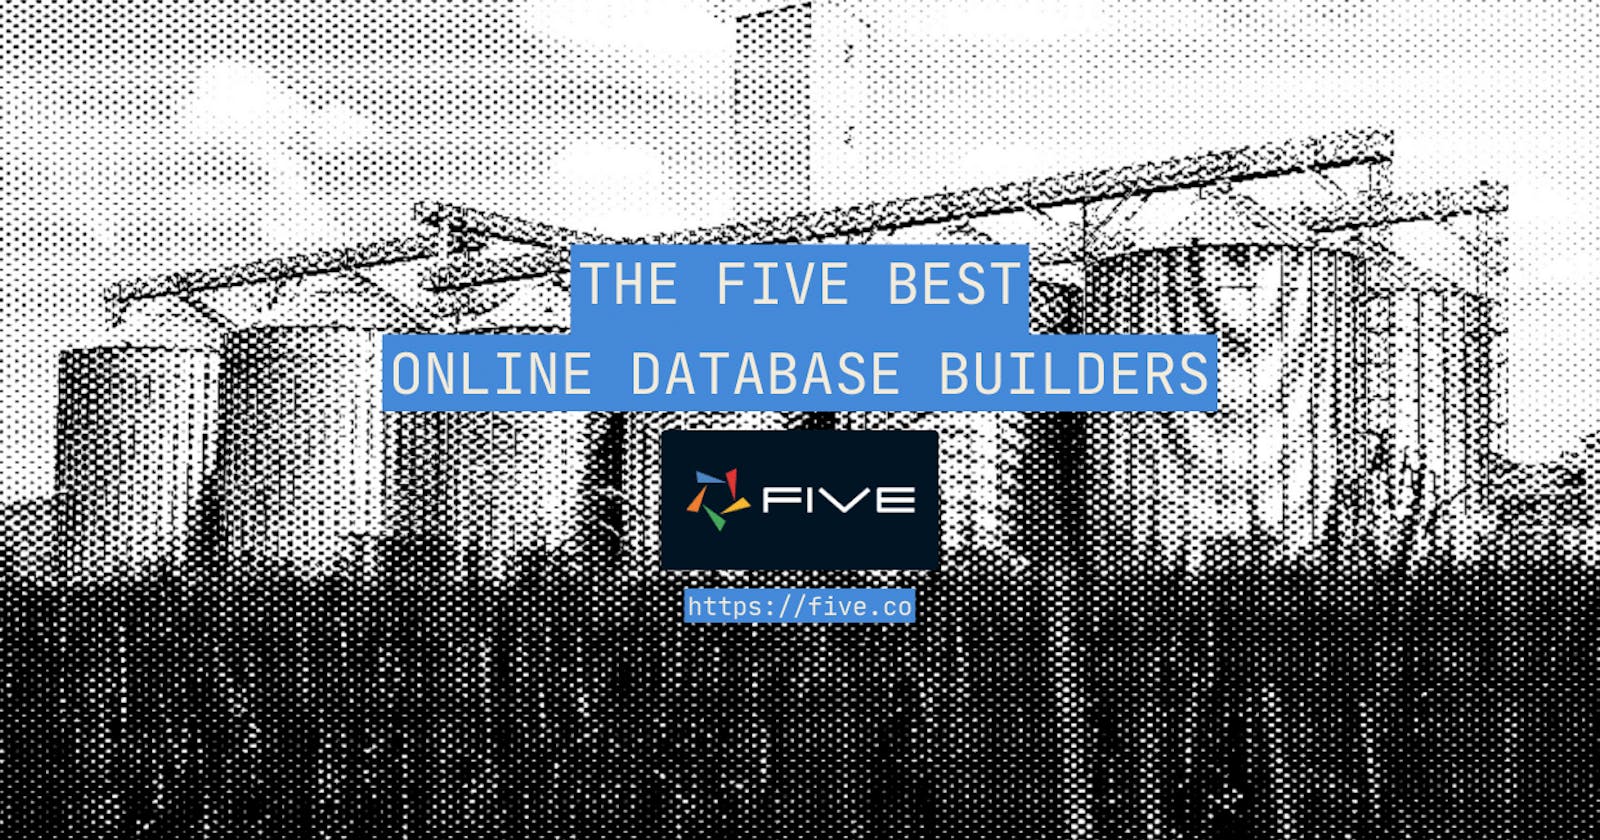 The Five Best Online Database Builders 2023